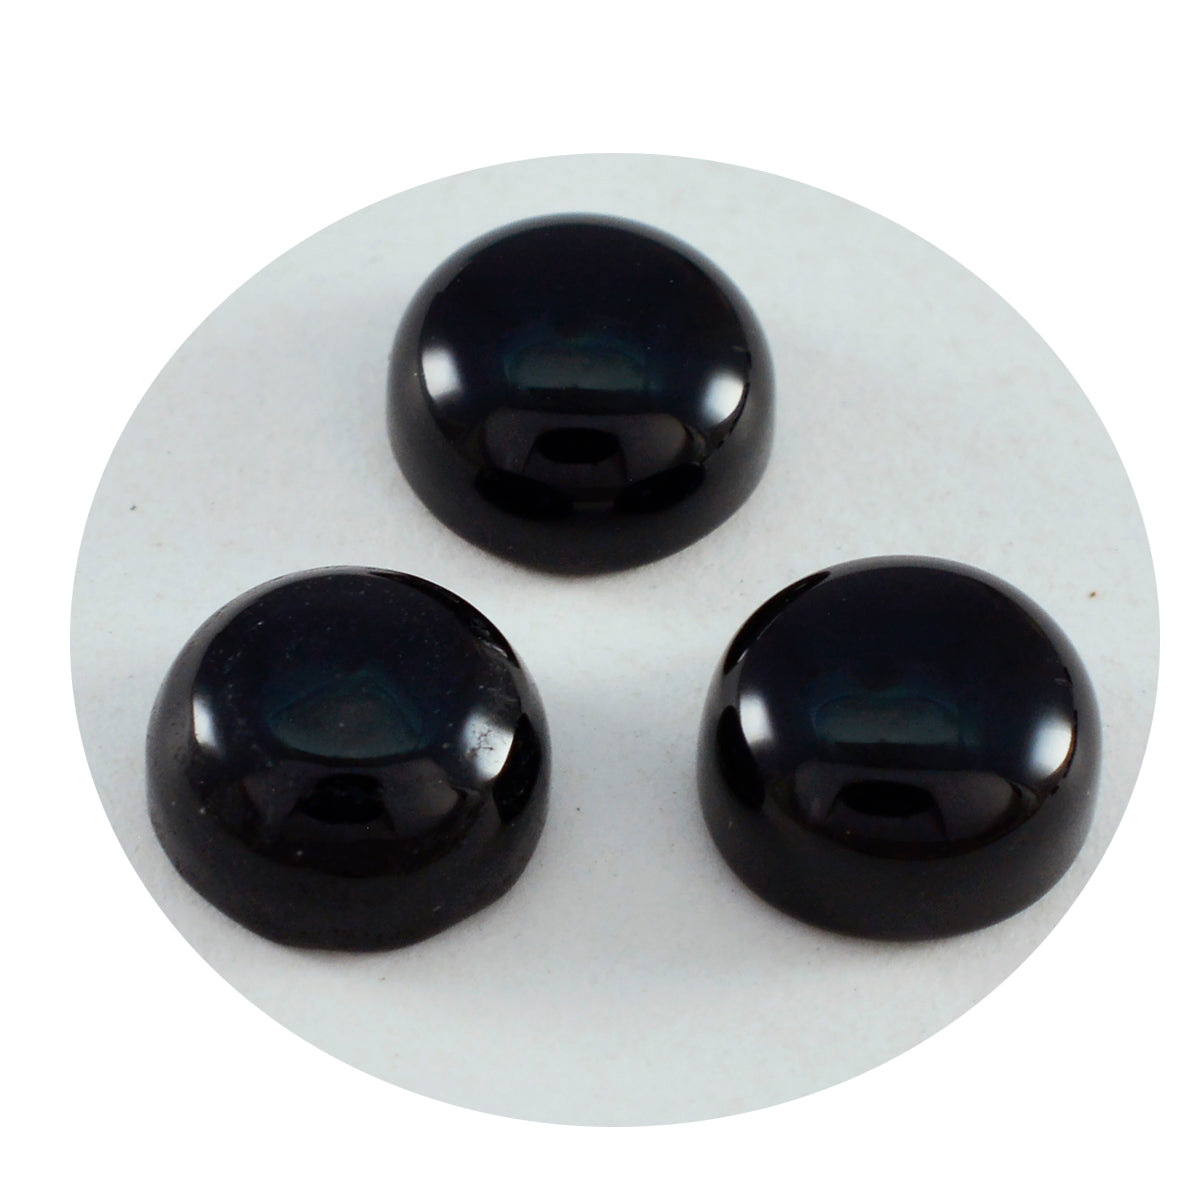 riyogems 1pc cabochon onyx noir 9x9 mm forme ronde pierre de belle qualité